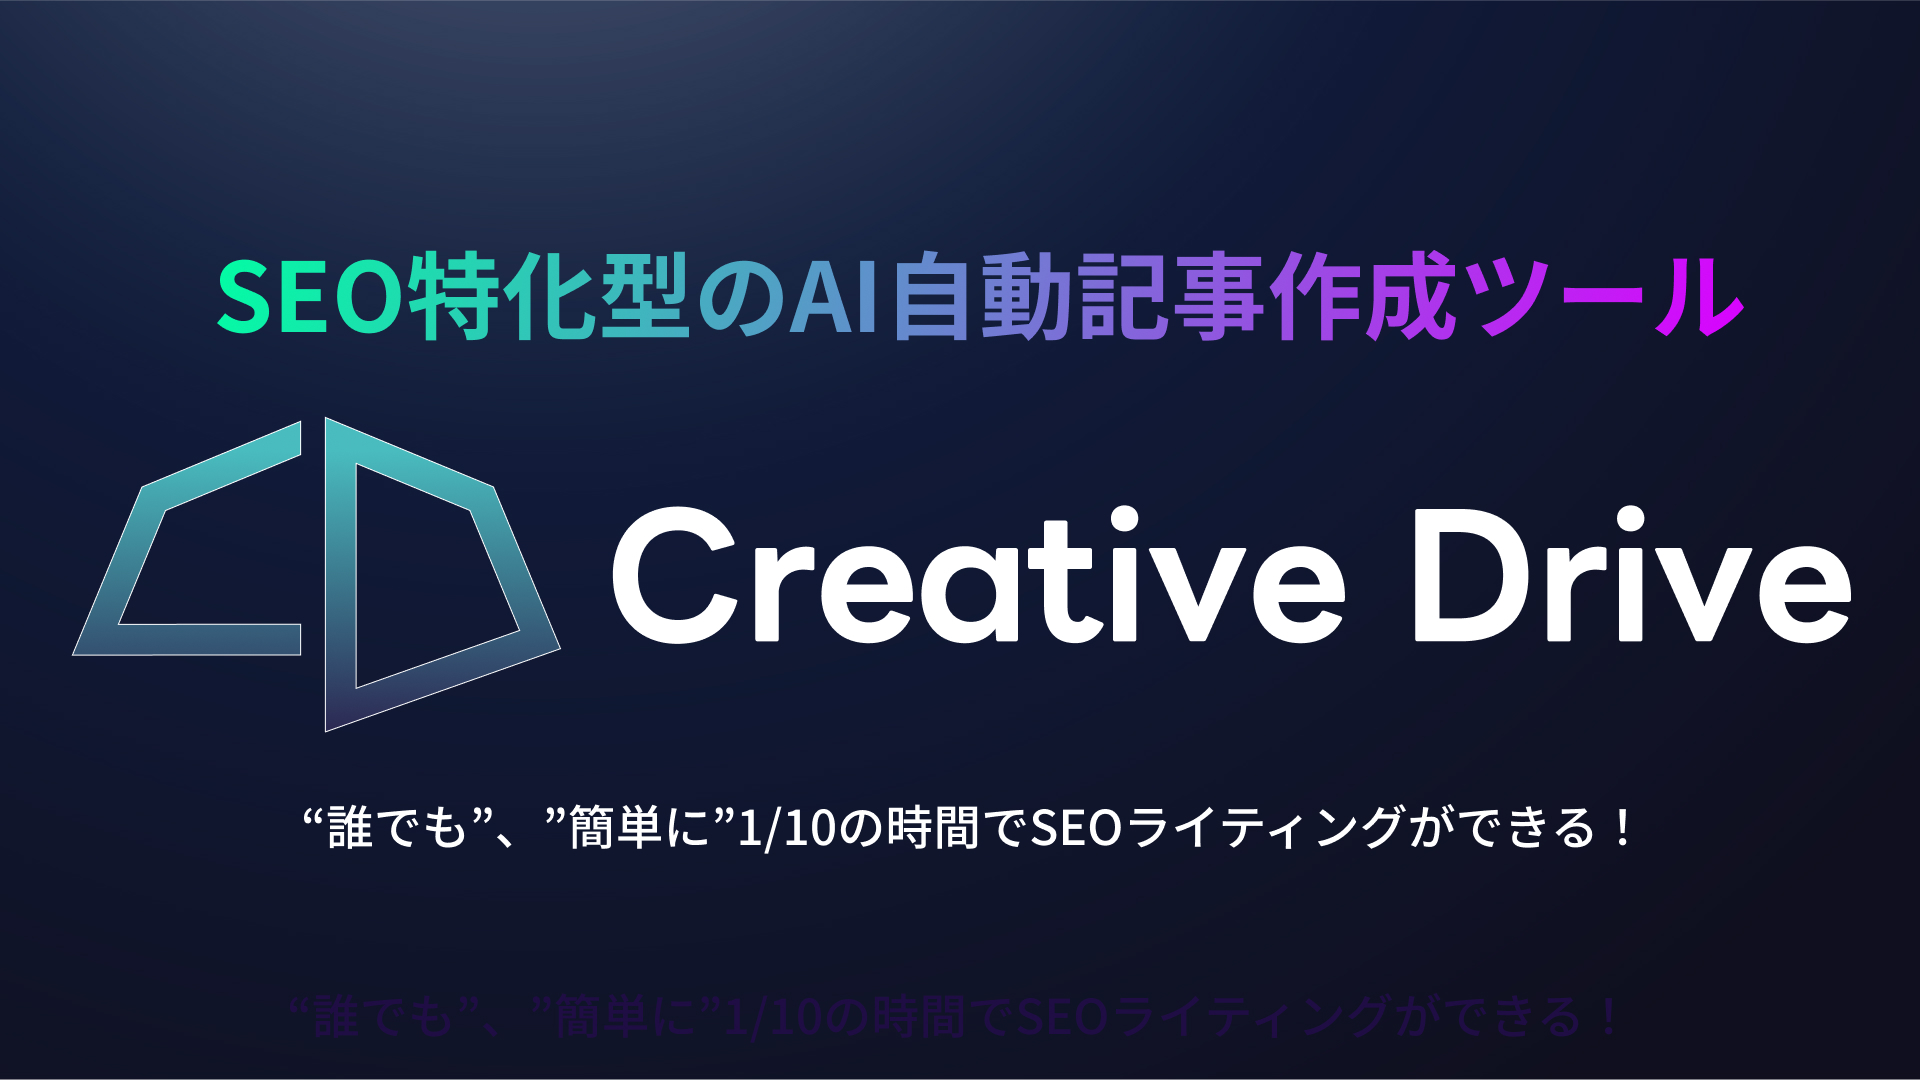 CreativeDrive(クリエイティブ ドライブ)SEO特化型のAI自動記事作成ツール